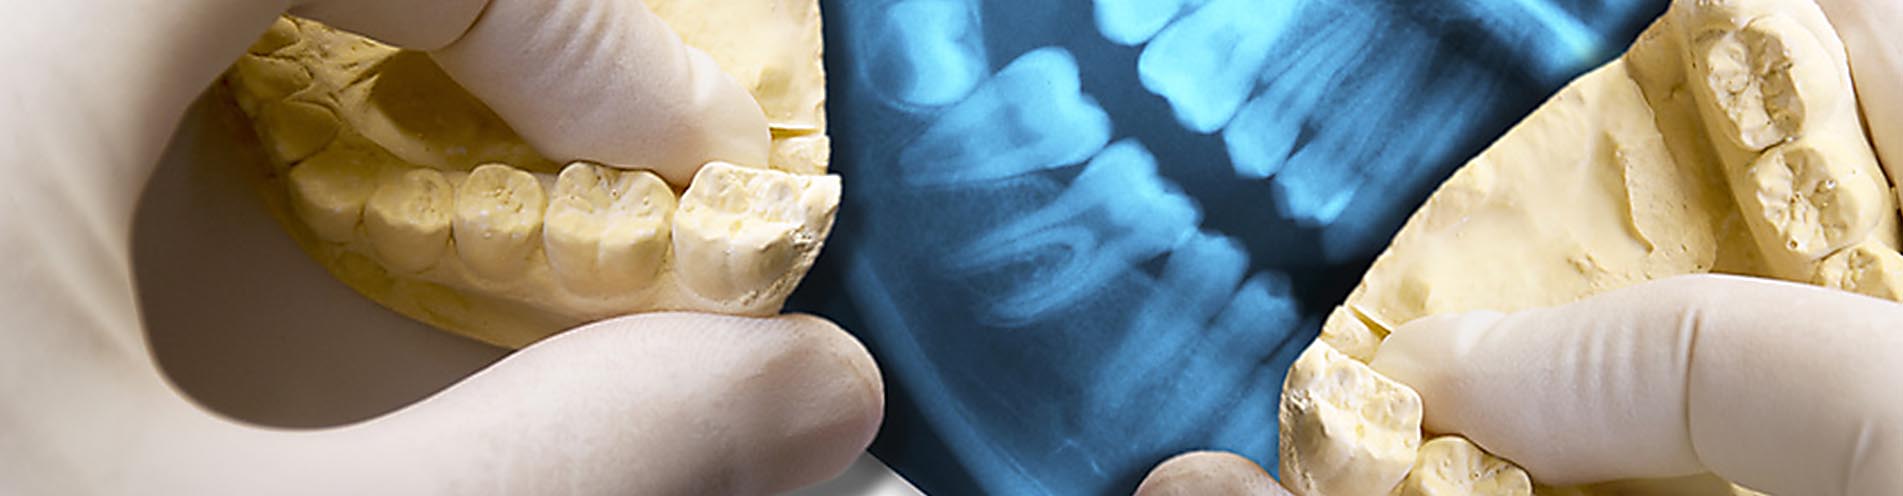 Wir sind spezialisiert auf Zahnimplantate. Aber auch Probleme an Weisheitszähnen behandeln wir seit Jahrzehnten sehr erfolgreich.